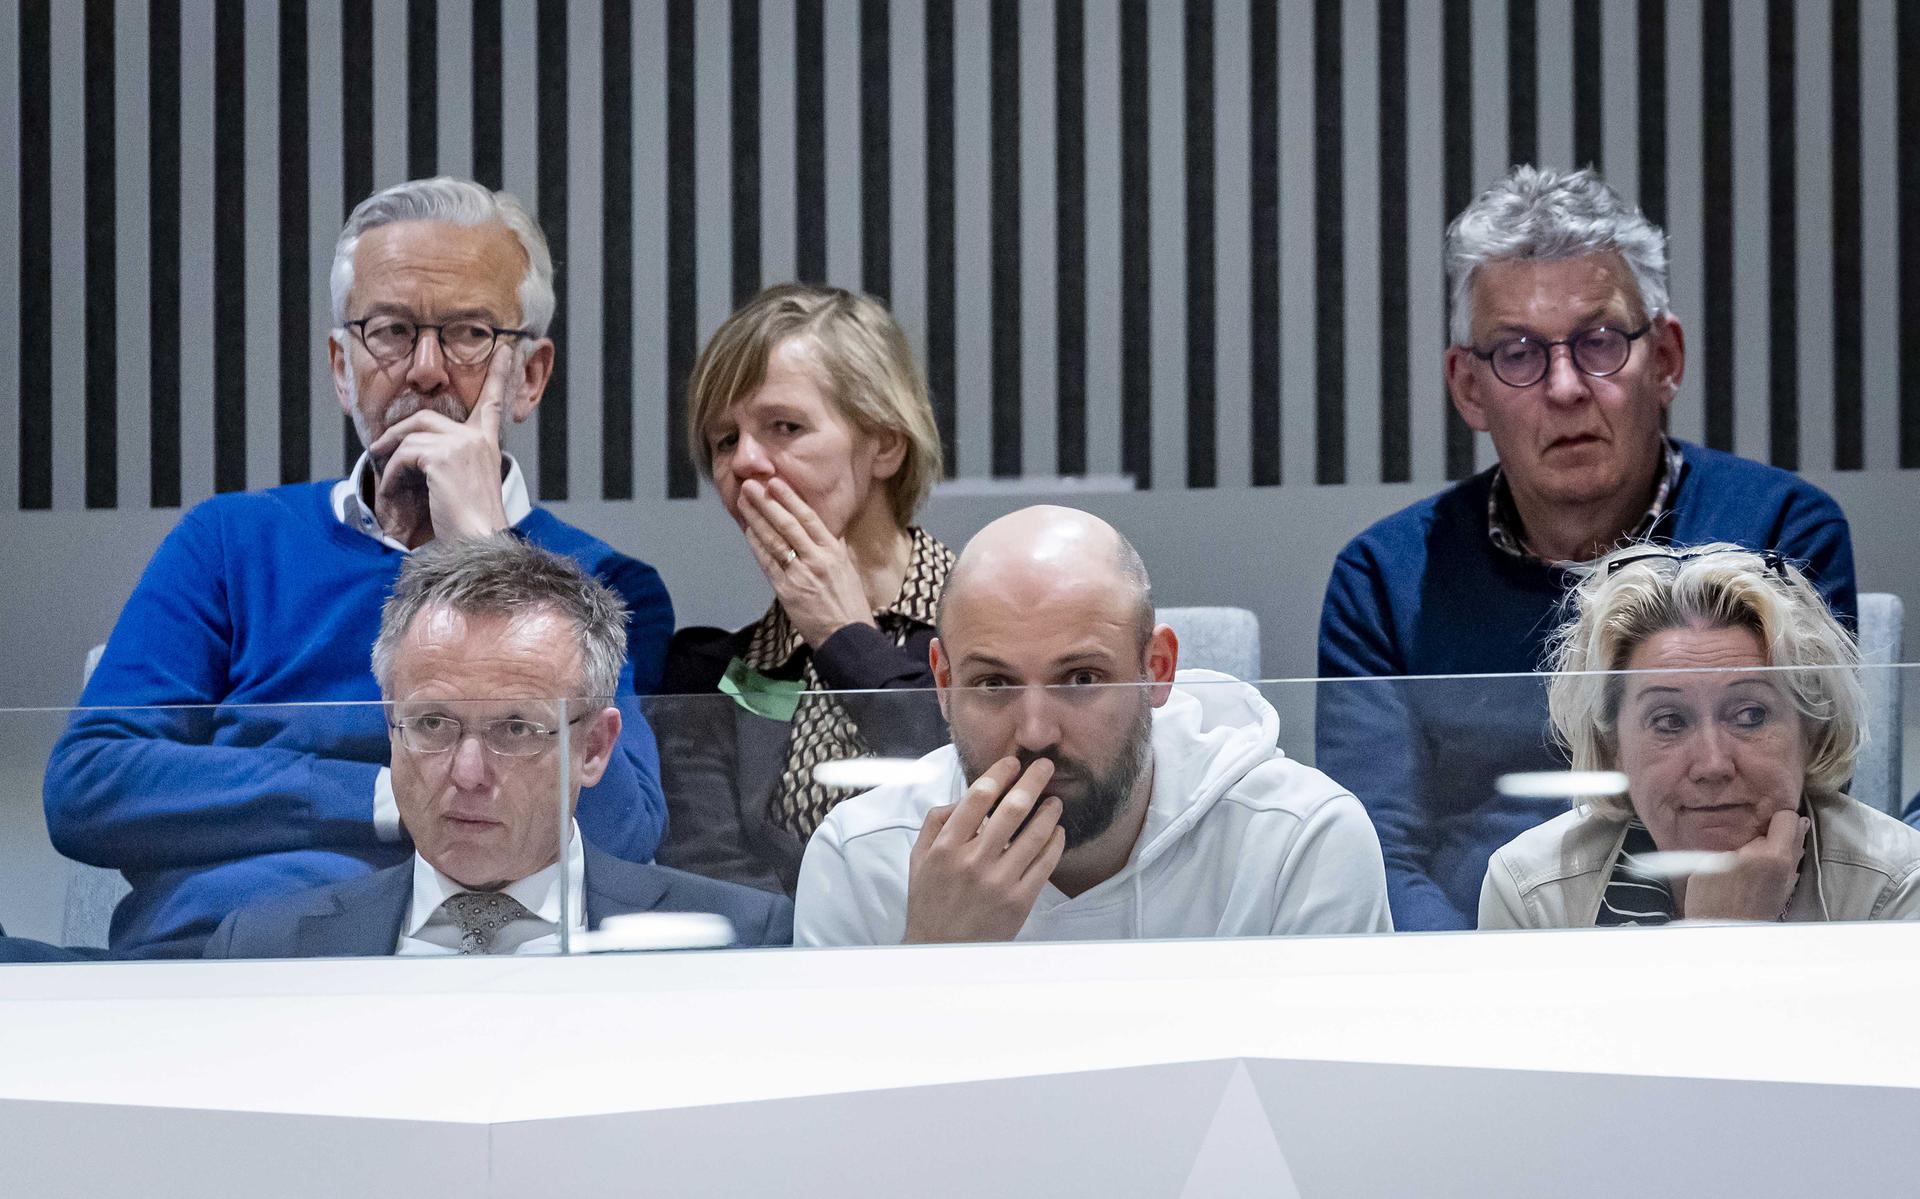 René Paas, commissaris van de Koning in Groningen (linksonder), op de publieke tribune van de Tweede Kamer tijdens het debat met de parlementaire enquêtecommissie aardgaswinning Groningen over het rapport 'Groningers boven gas'. 